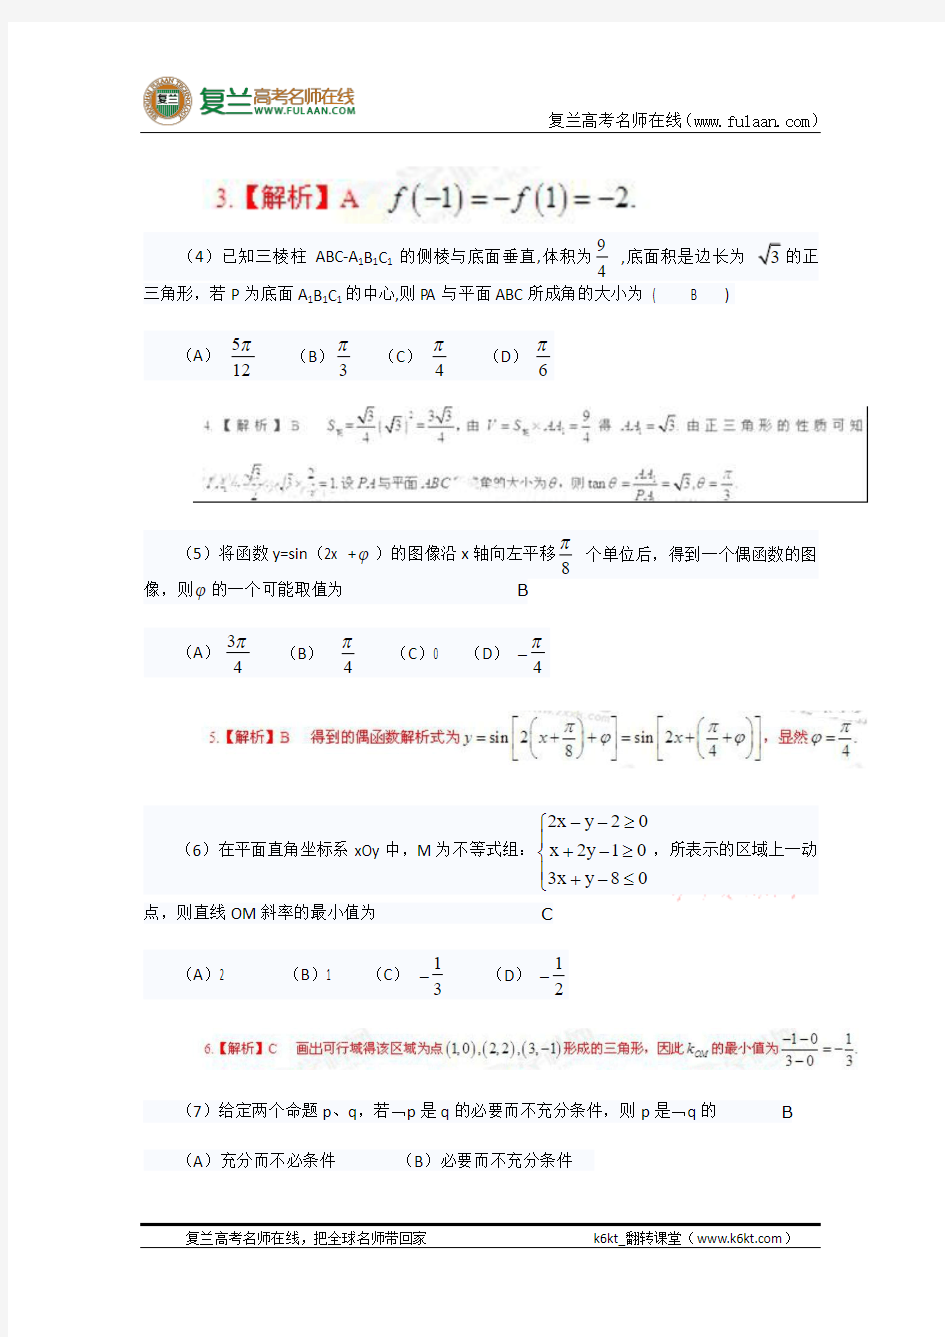 2013年高考真题——理科数学(山东卷)-复兰高考名师在线精编解析版